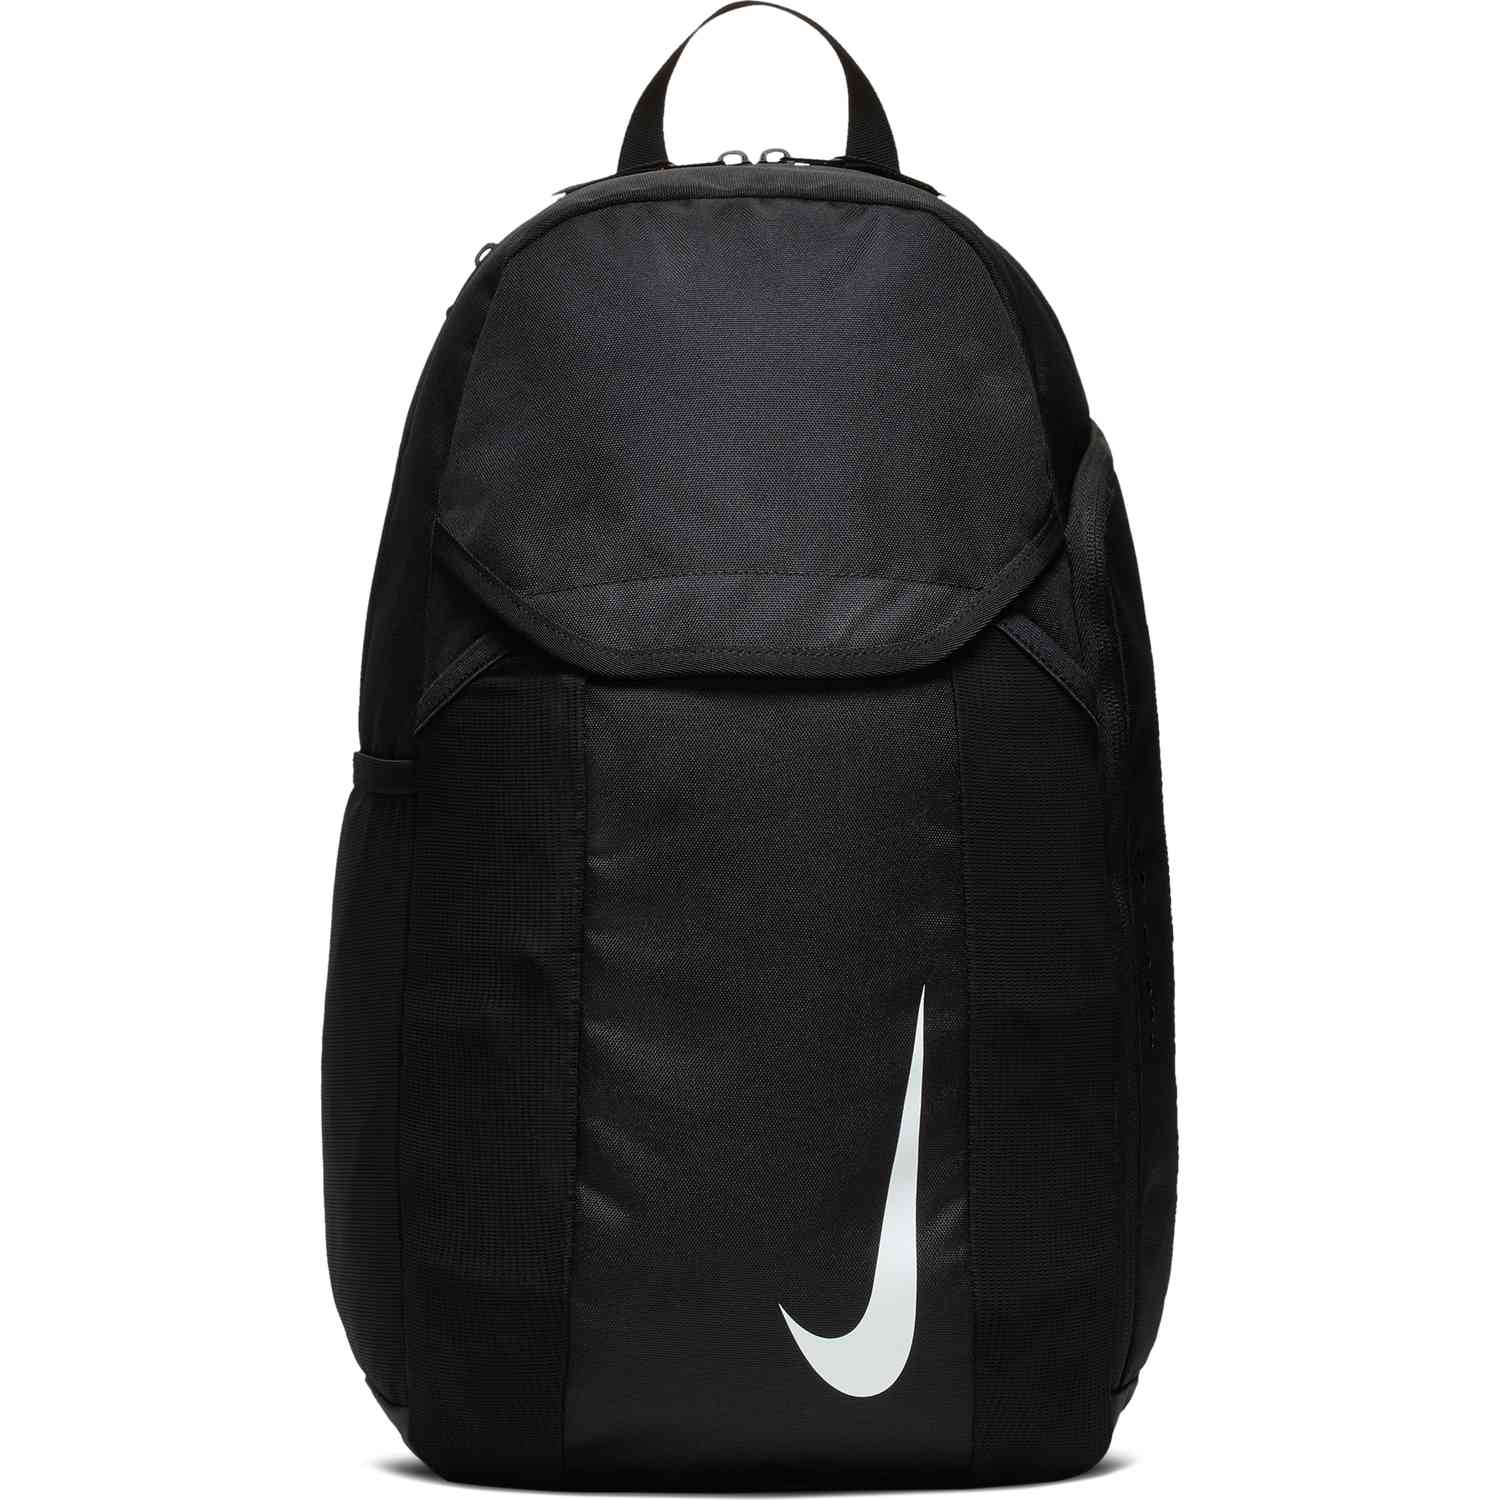 nike soccer backpack